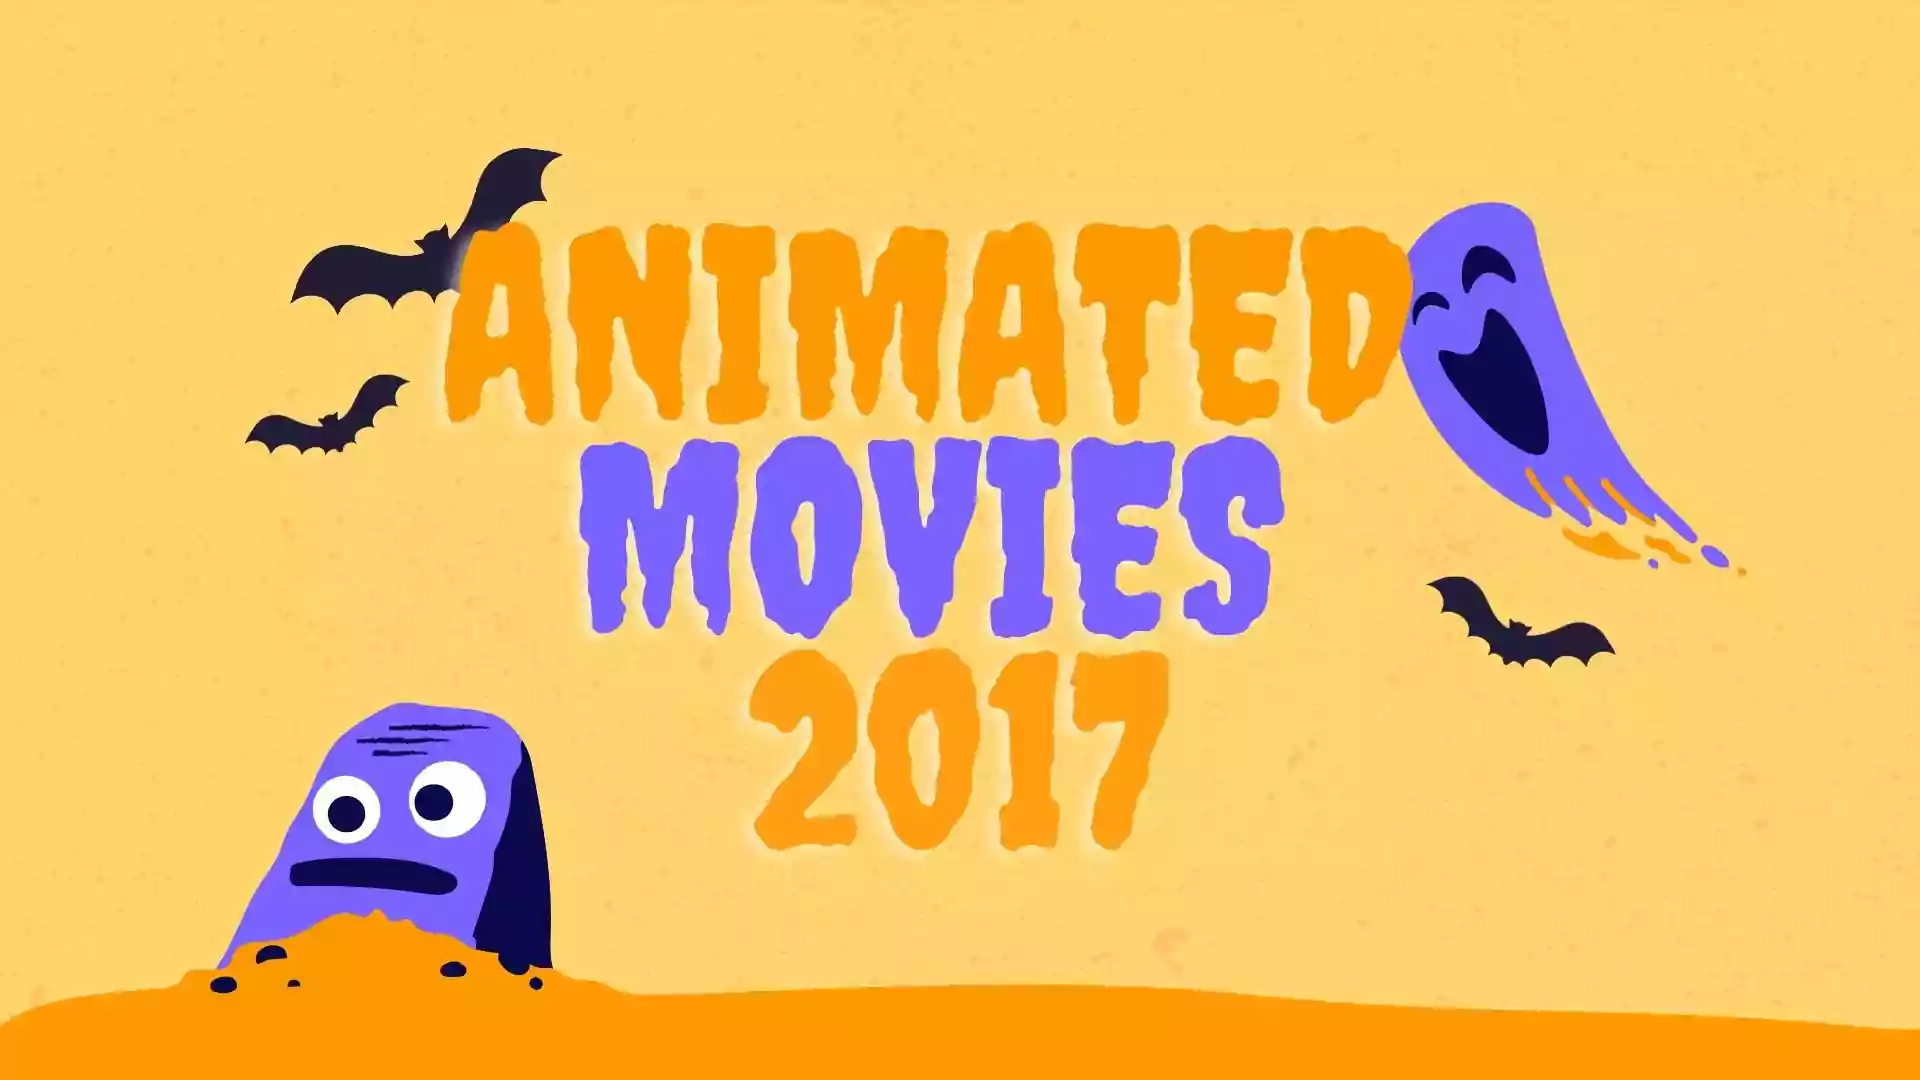 Animated Movies 2017 | Top Animated Movies 2017